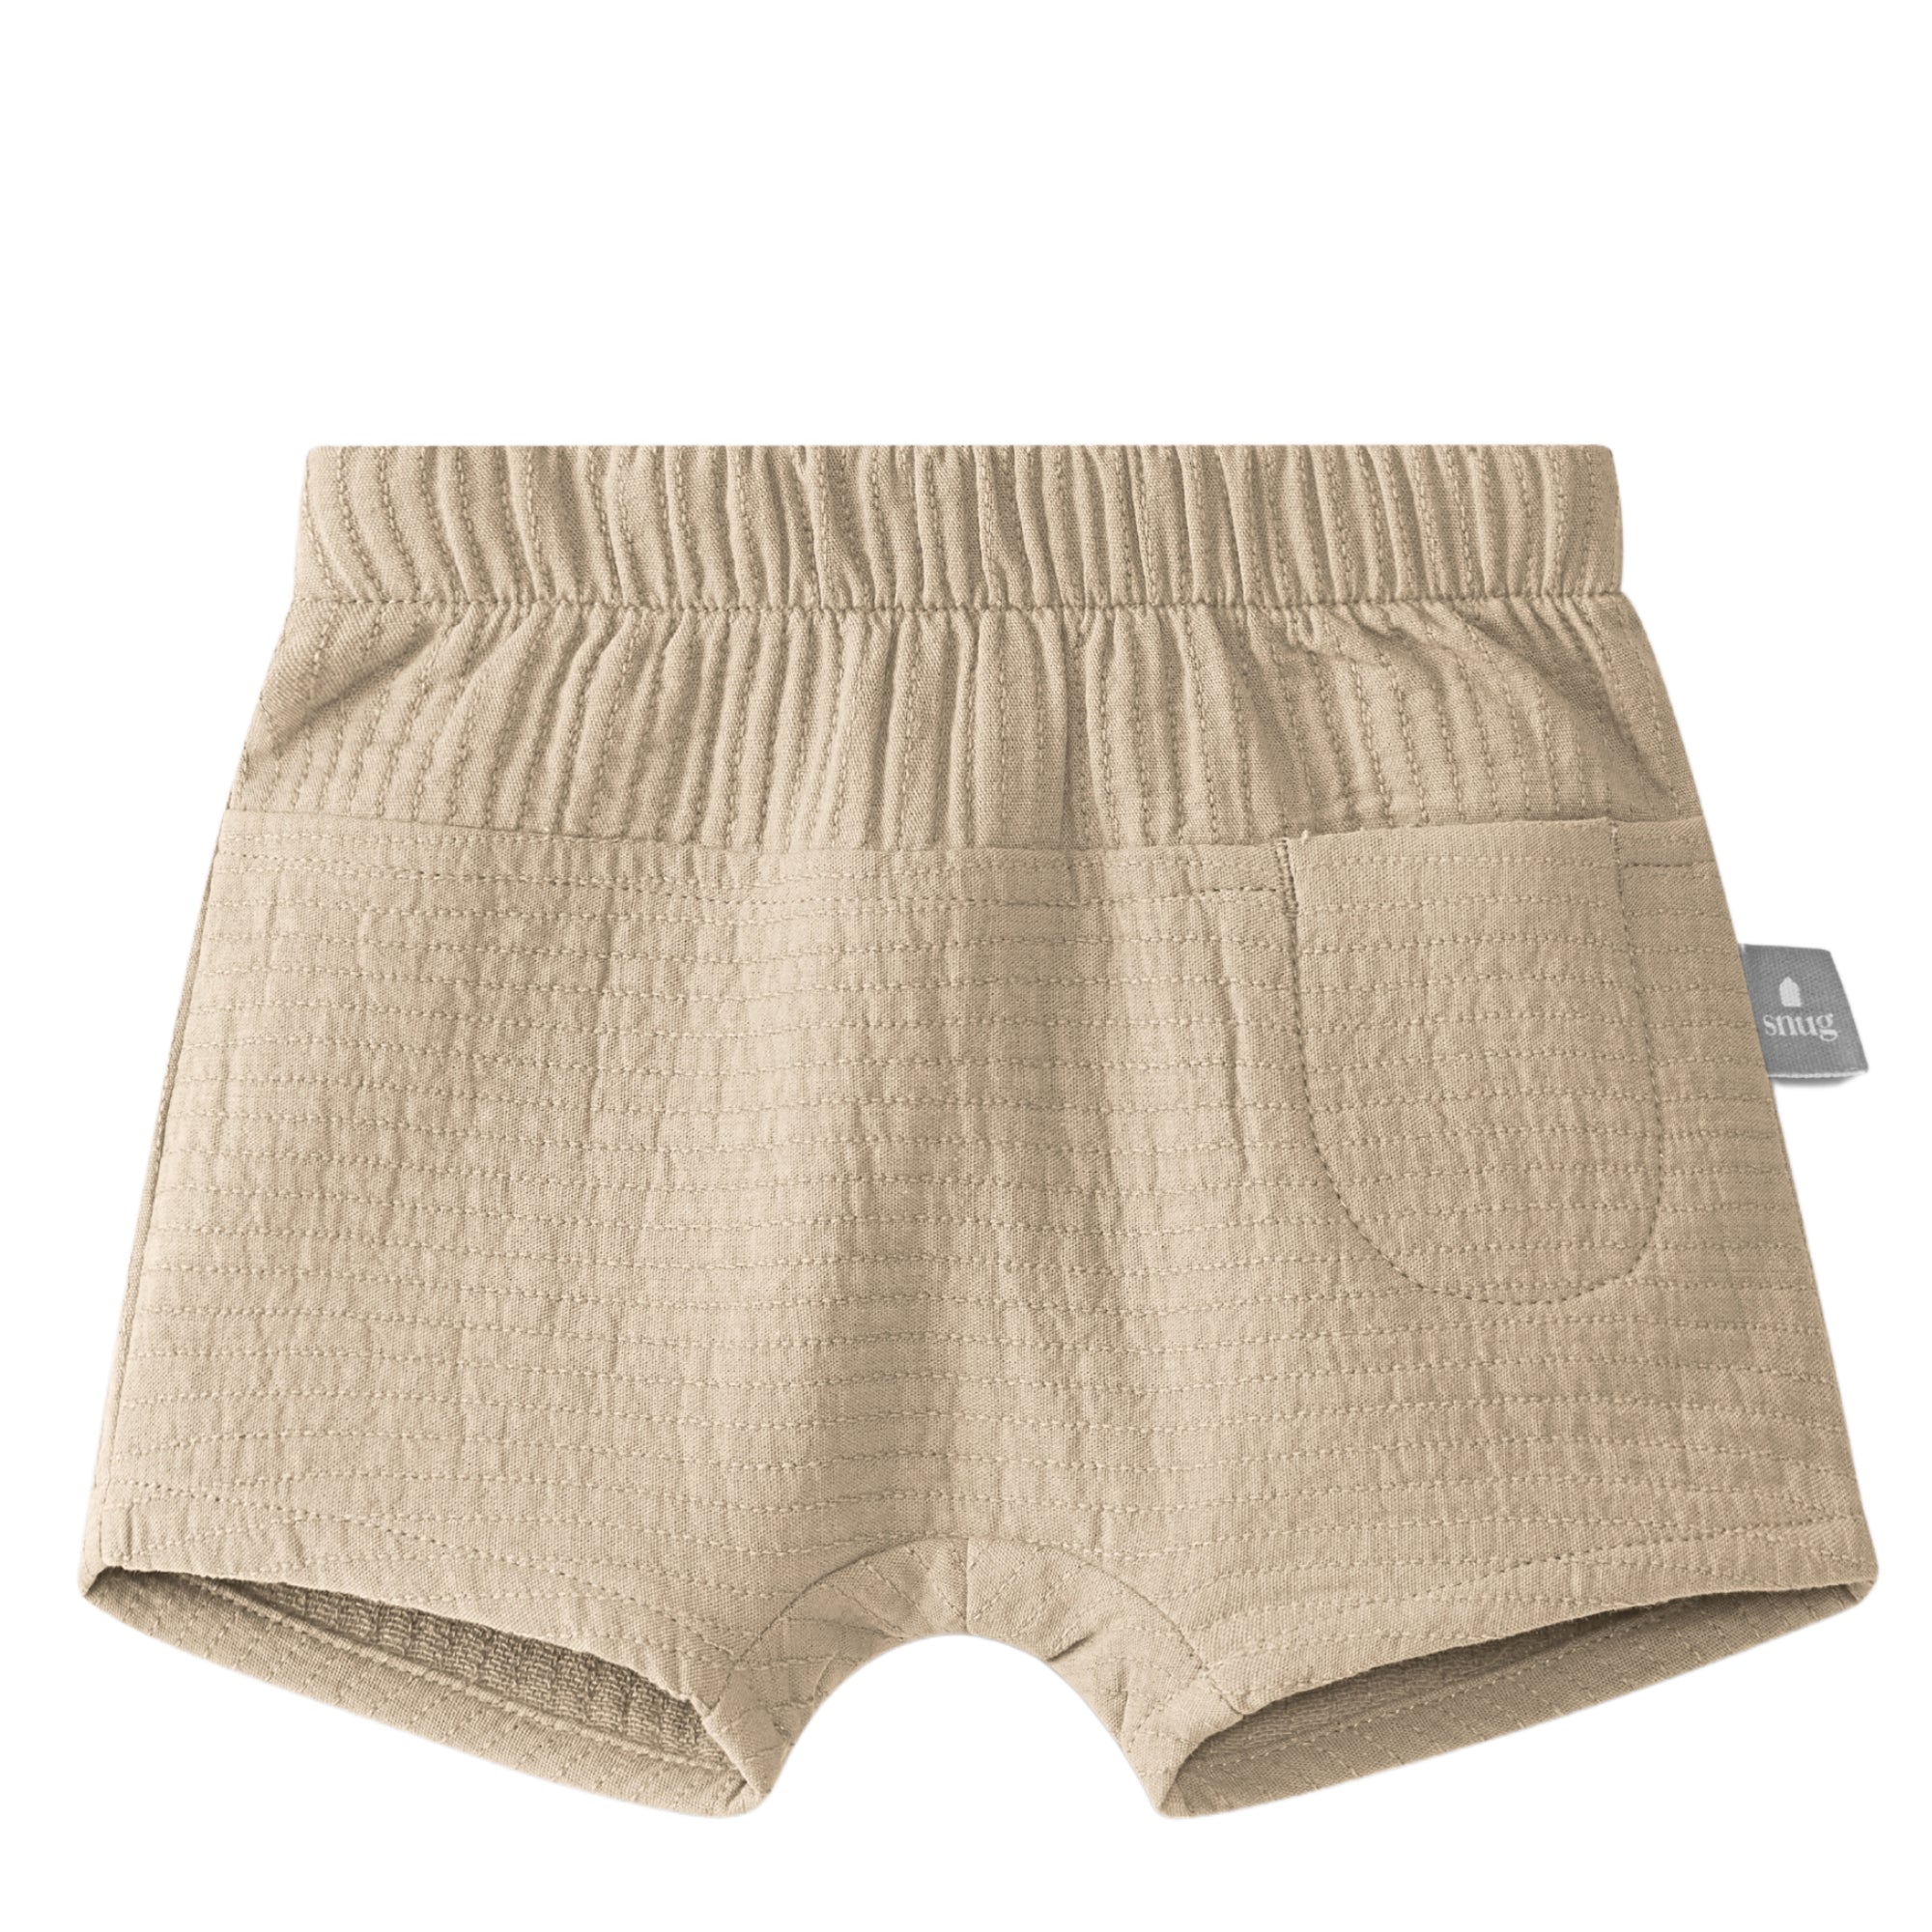 pantalone-corto-in-cotone-colore-nocciola-in-cotone-garzato-ideale-per-la-stagione-estiva